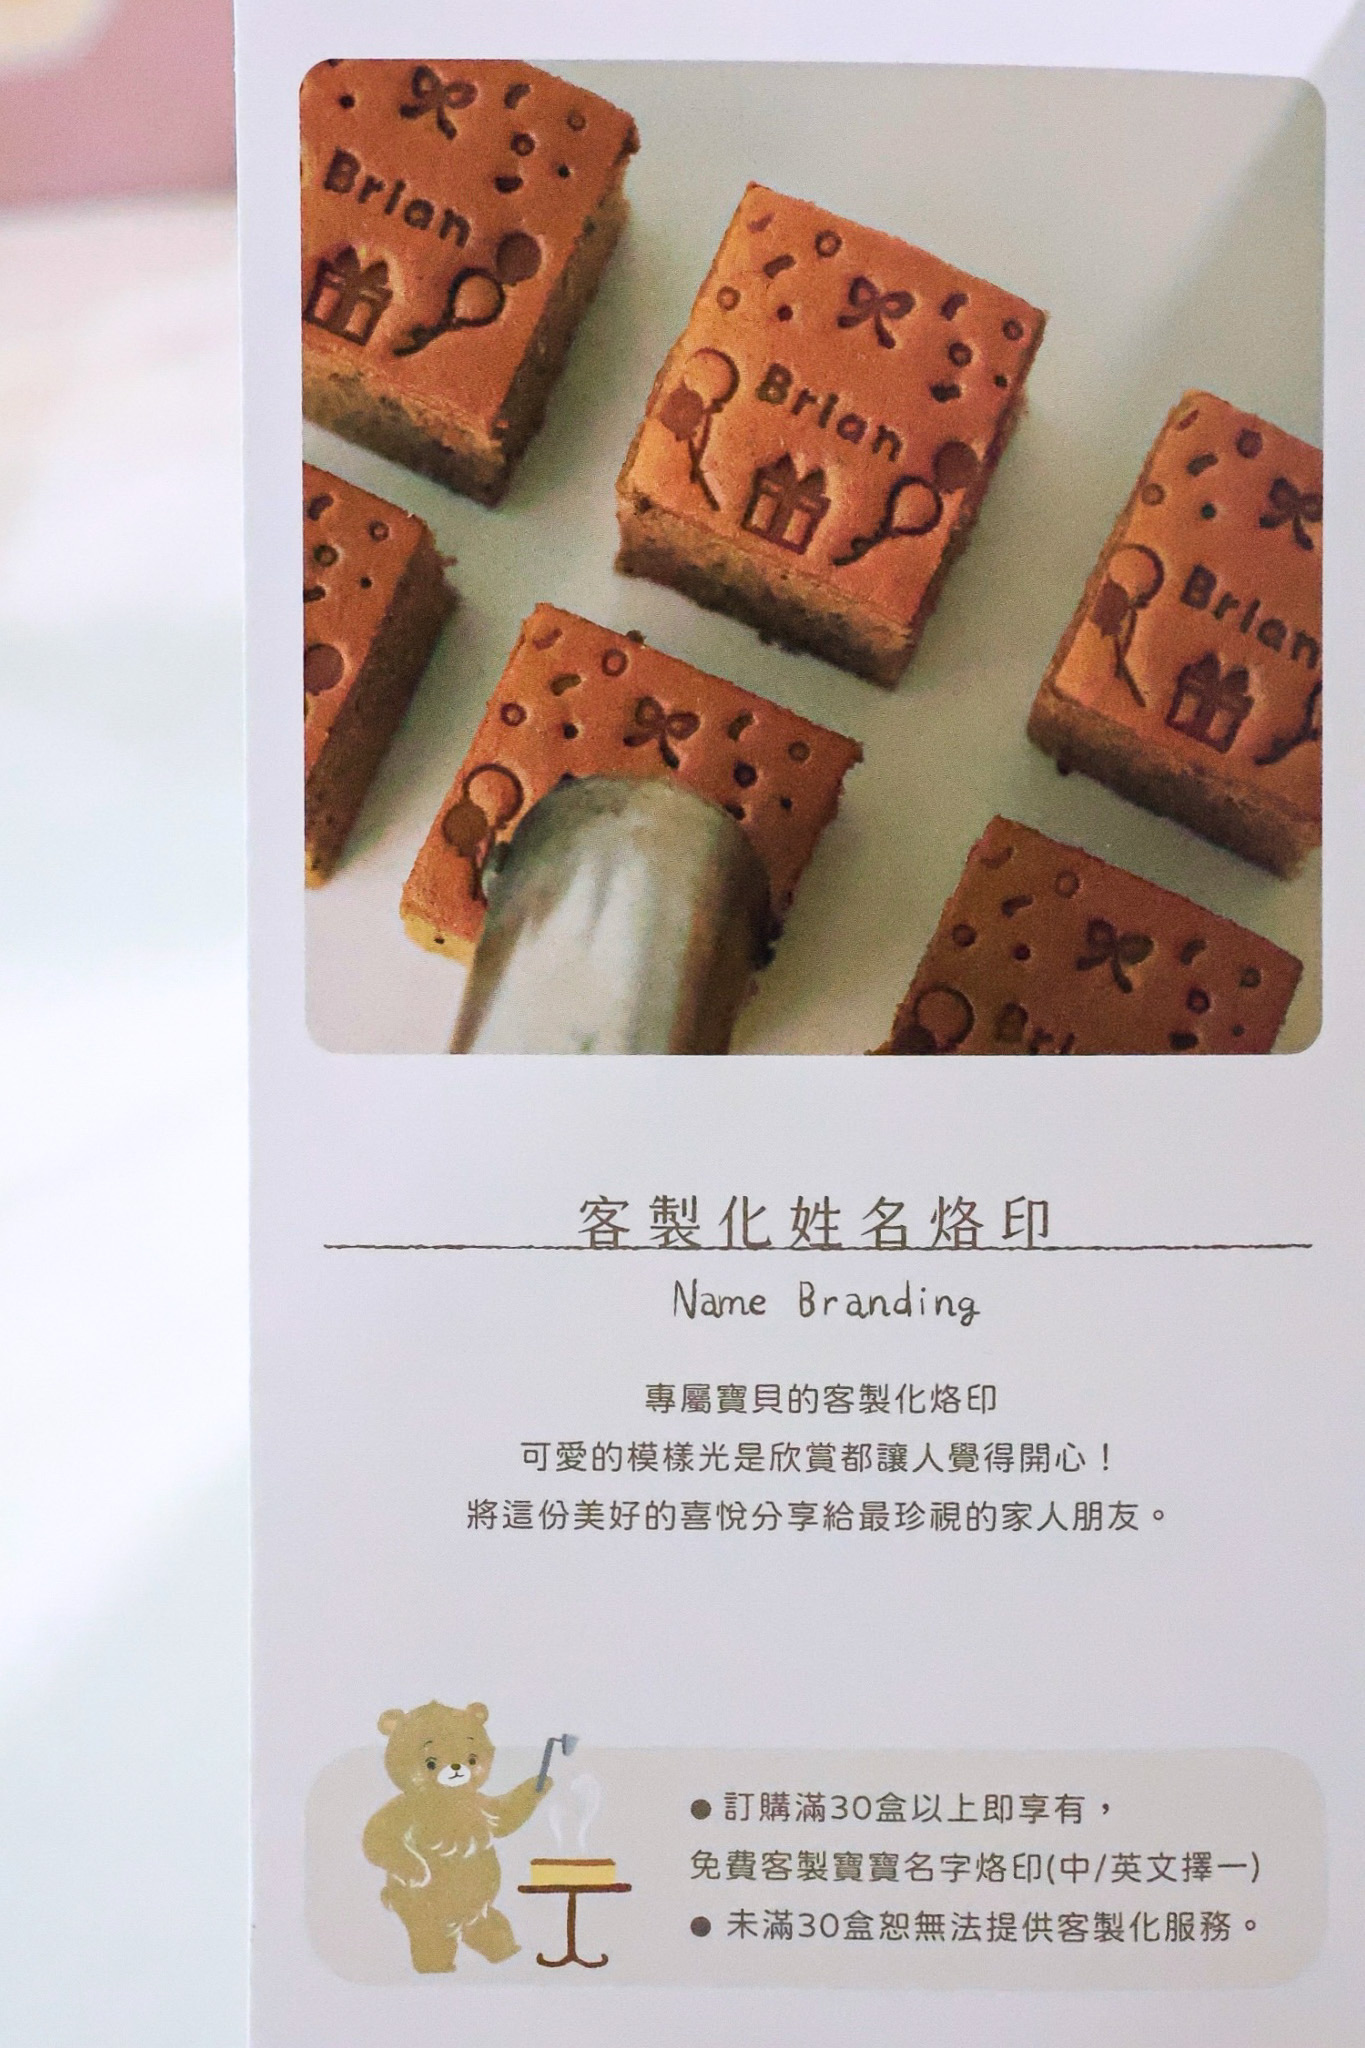 彌月｜ 萌翻天小熊蜂蜜蛋糕 ◤Like a dream 蜂蜜蛋糕専門店◢ 還可以客製專屬寶寶名字烙印